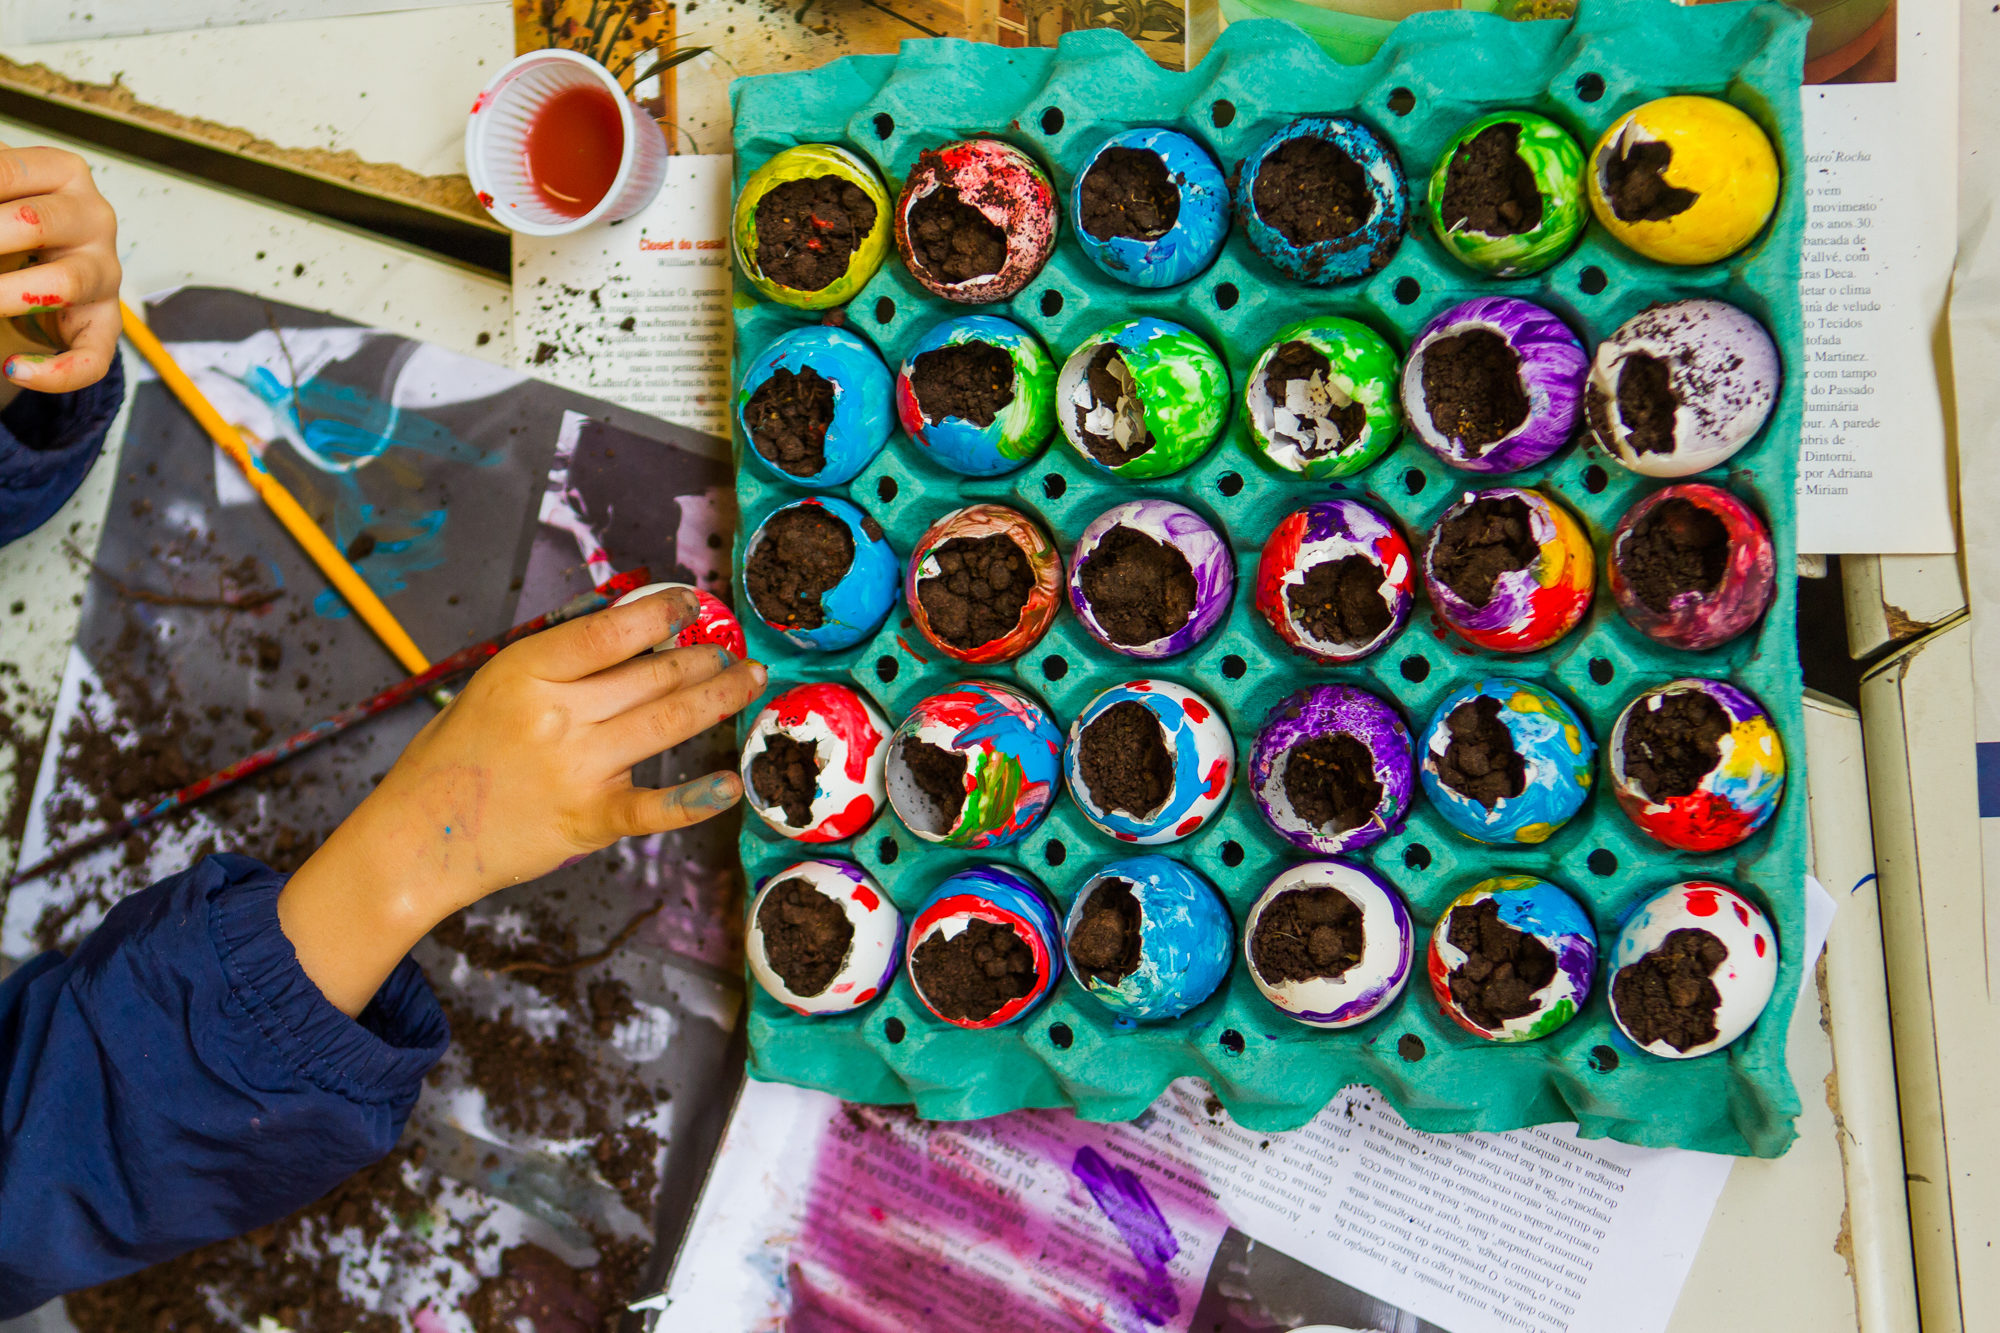 Na imagem, uma criança reutiliza cascas de ovos coloridas como vaso para plantinhas.